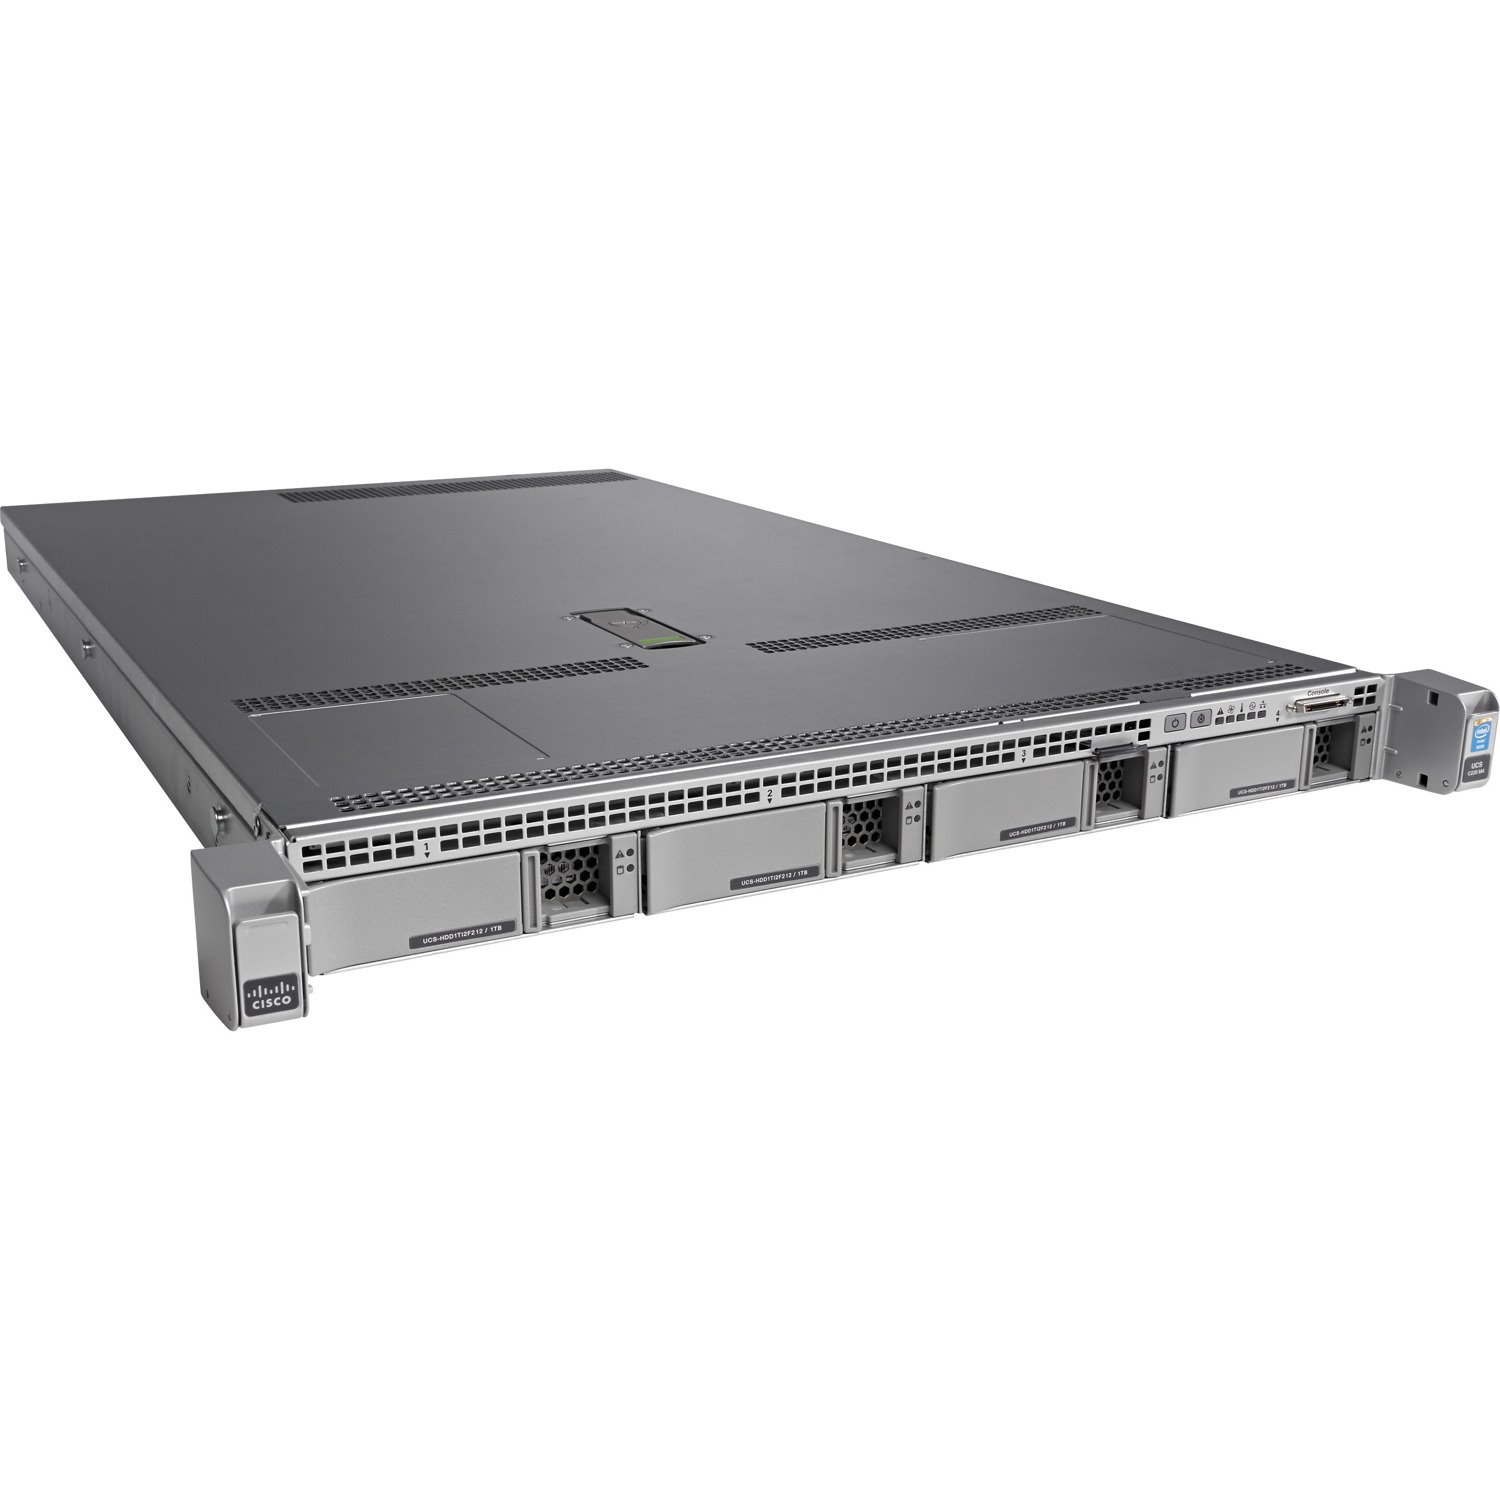 Cisco C220 M4 1U Rack Server - 2 x Intel Xeon E5-2630 v4 2.20 GHz - 64 GB RAM - Serial ATA/600 Controller